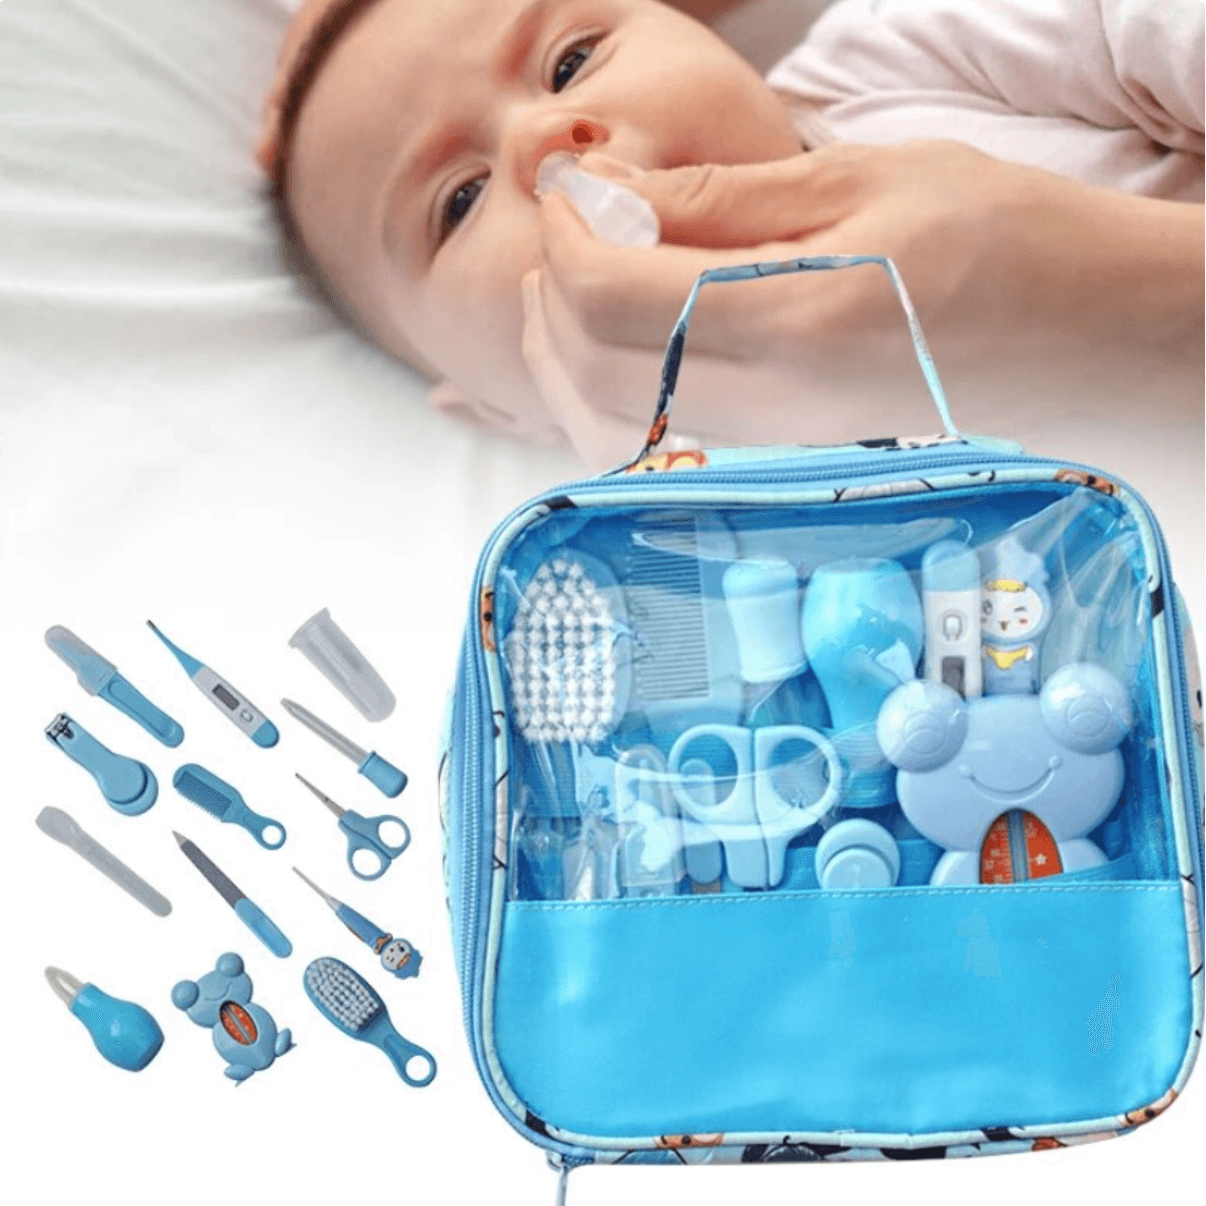 Trousse de soins bébé bleue : 13 pièces pour le confort de votre petit rayon de soleil